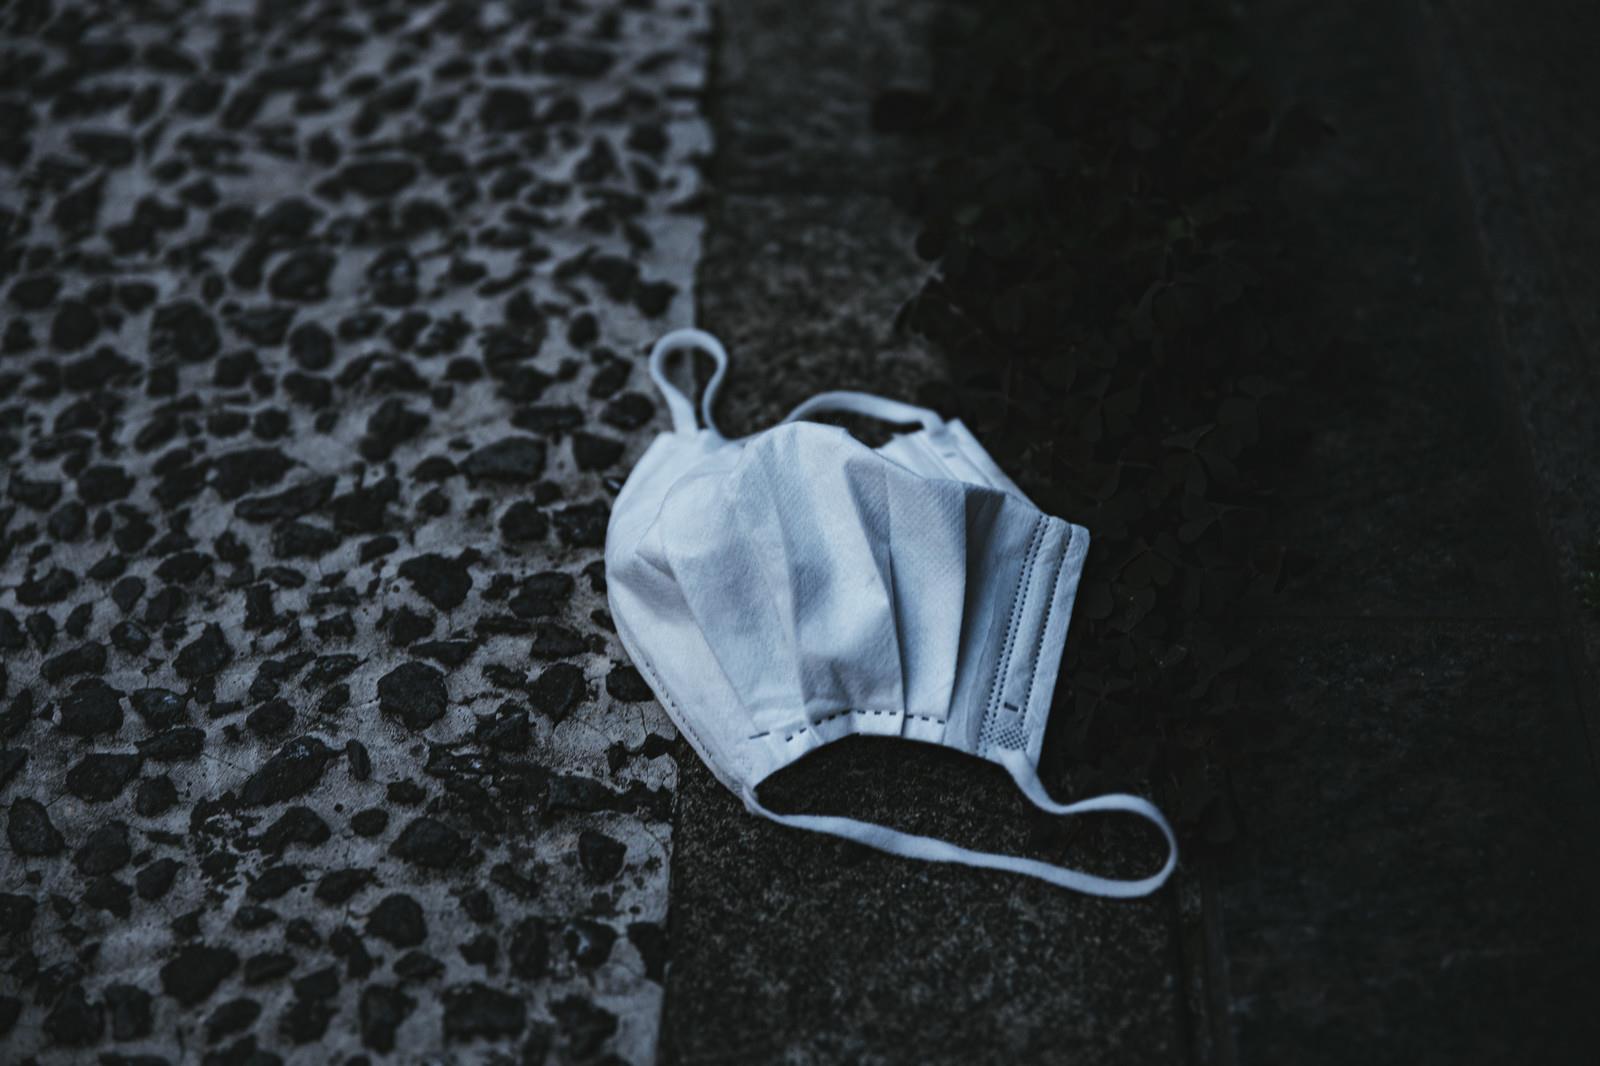 コンクリートの路上にポイ捨てされた白いマスクの写真